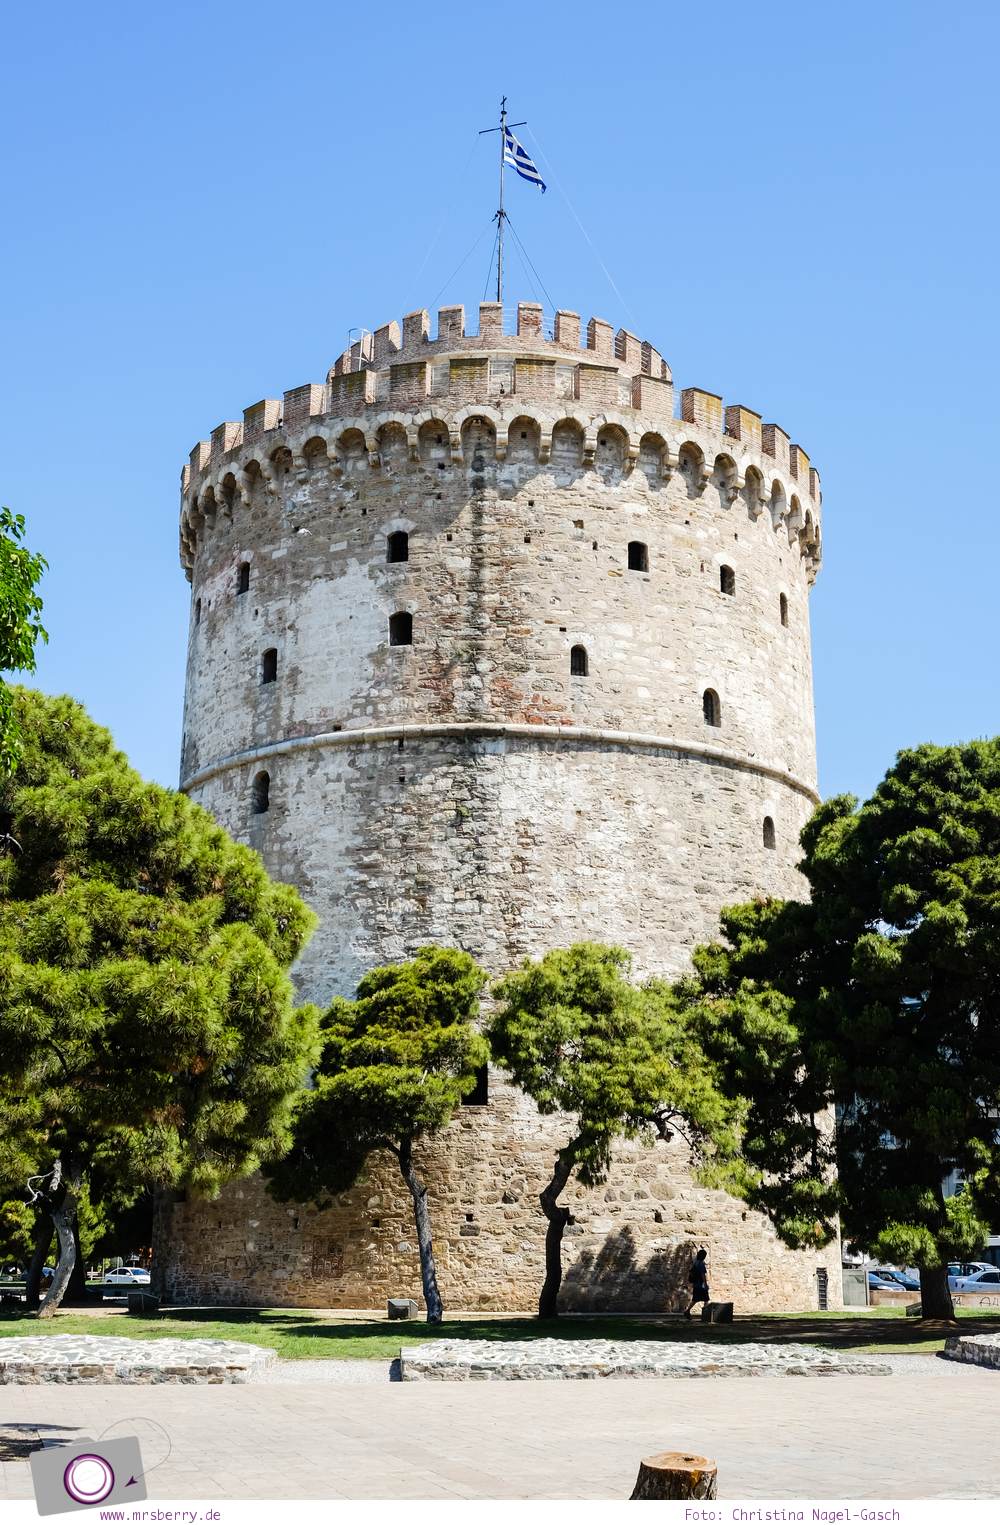 Griechenland: Sehenswürdigkeiten in Thessaloniki - ein Stadtrundgang in 4 Stunden: Weisser Turm